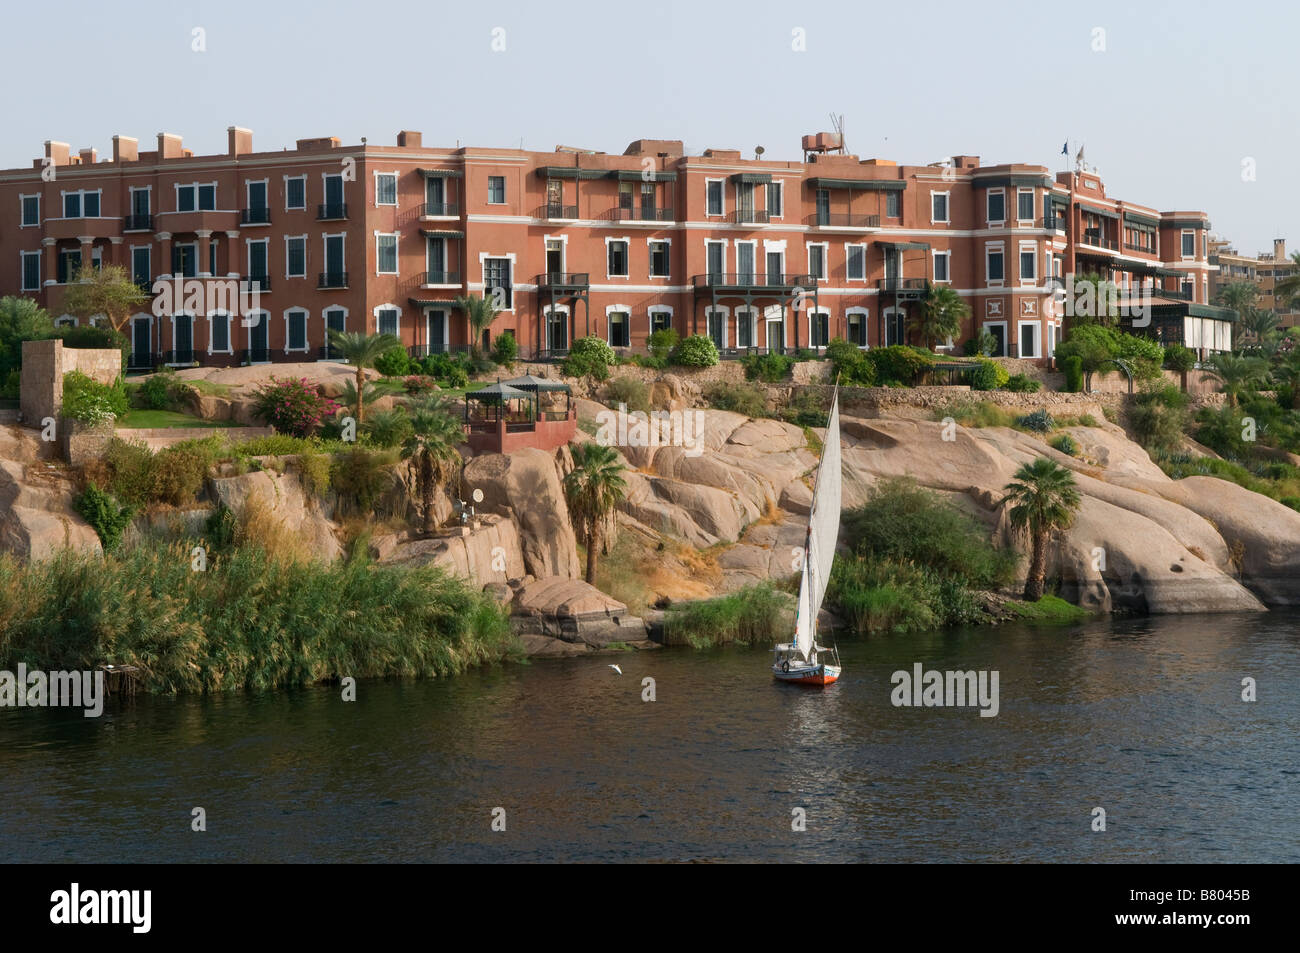 La leyenda Sofitel Old Cataract Hotel histórico de la época colonial británica resort de lujo de 5 estrellas situado a orillas del río Nilo en Asuán Egipto Foto de stock